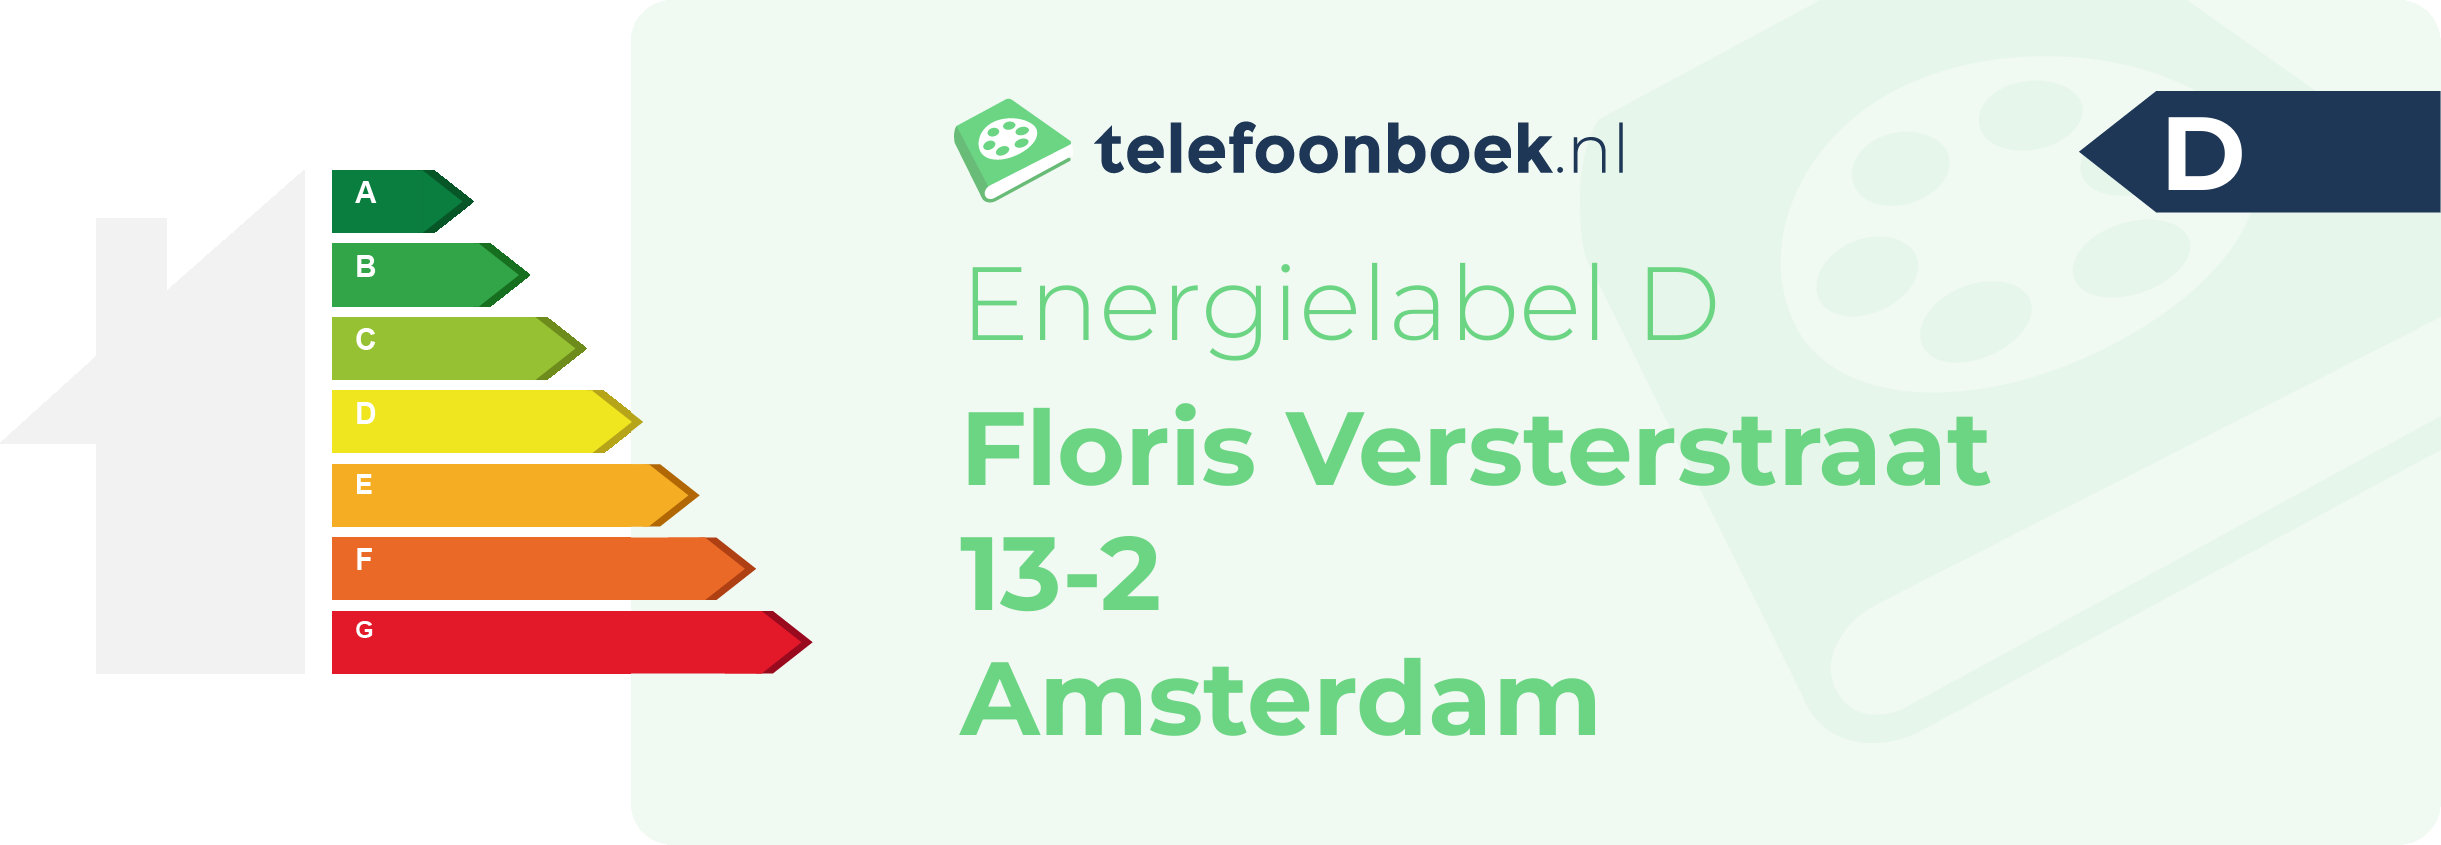 Energielabel Floris Versterstraat 13-2 Amsterdam